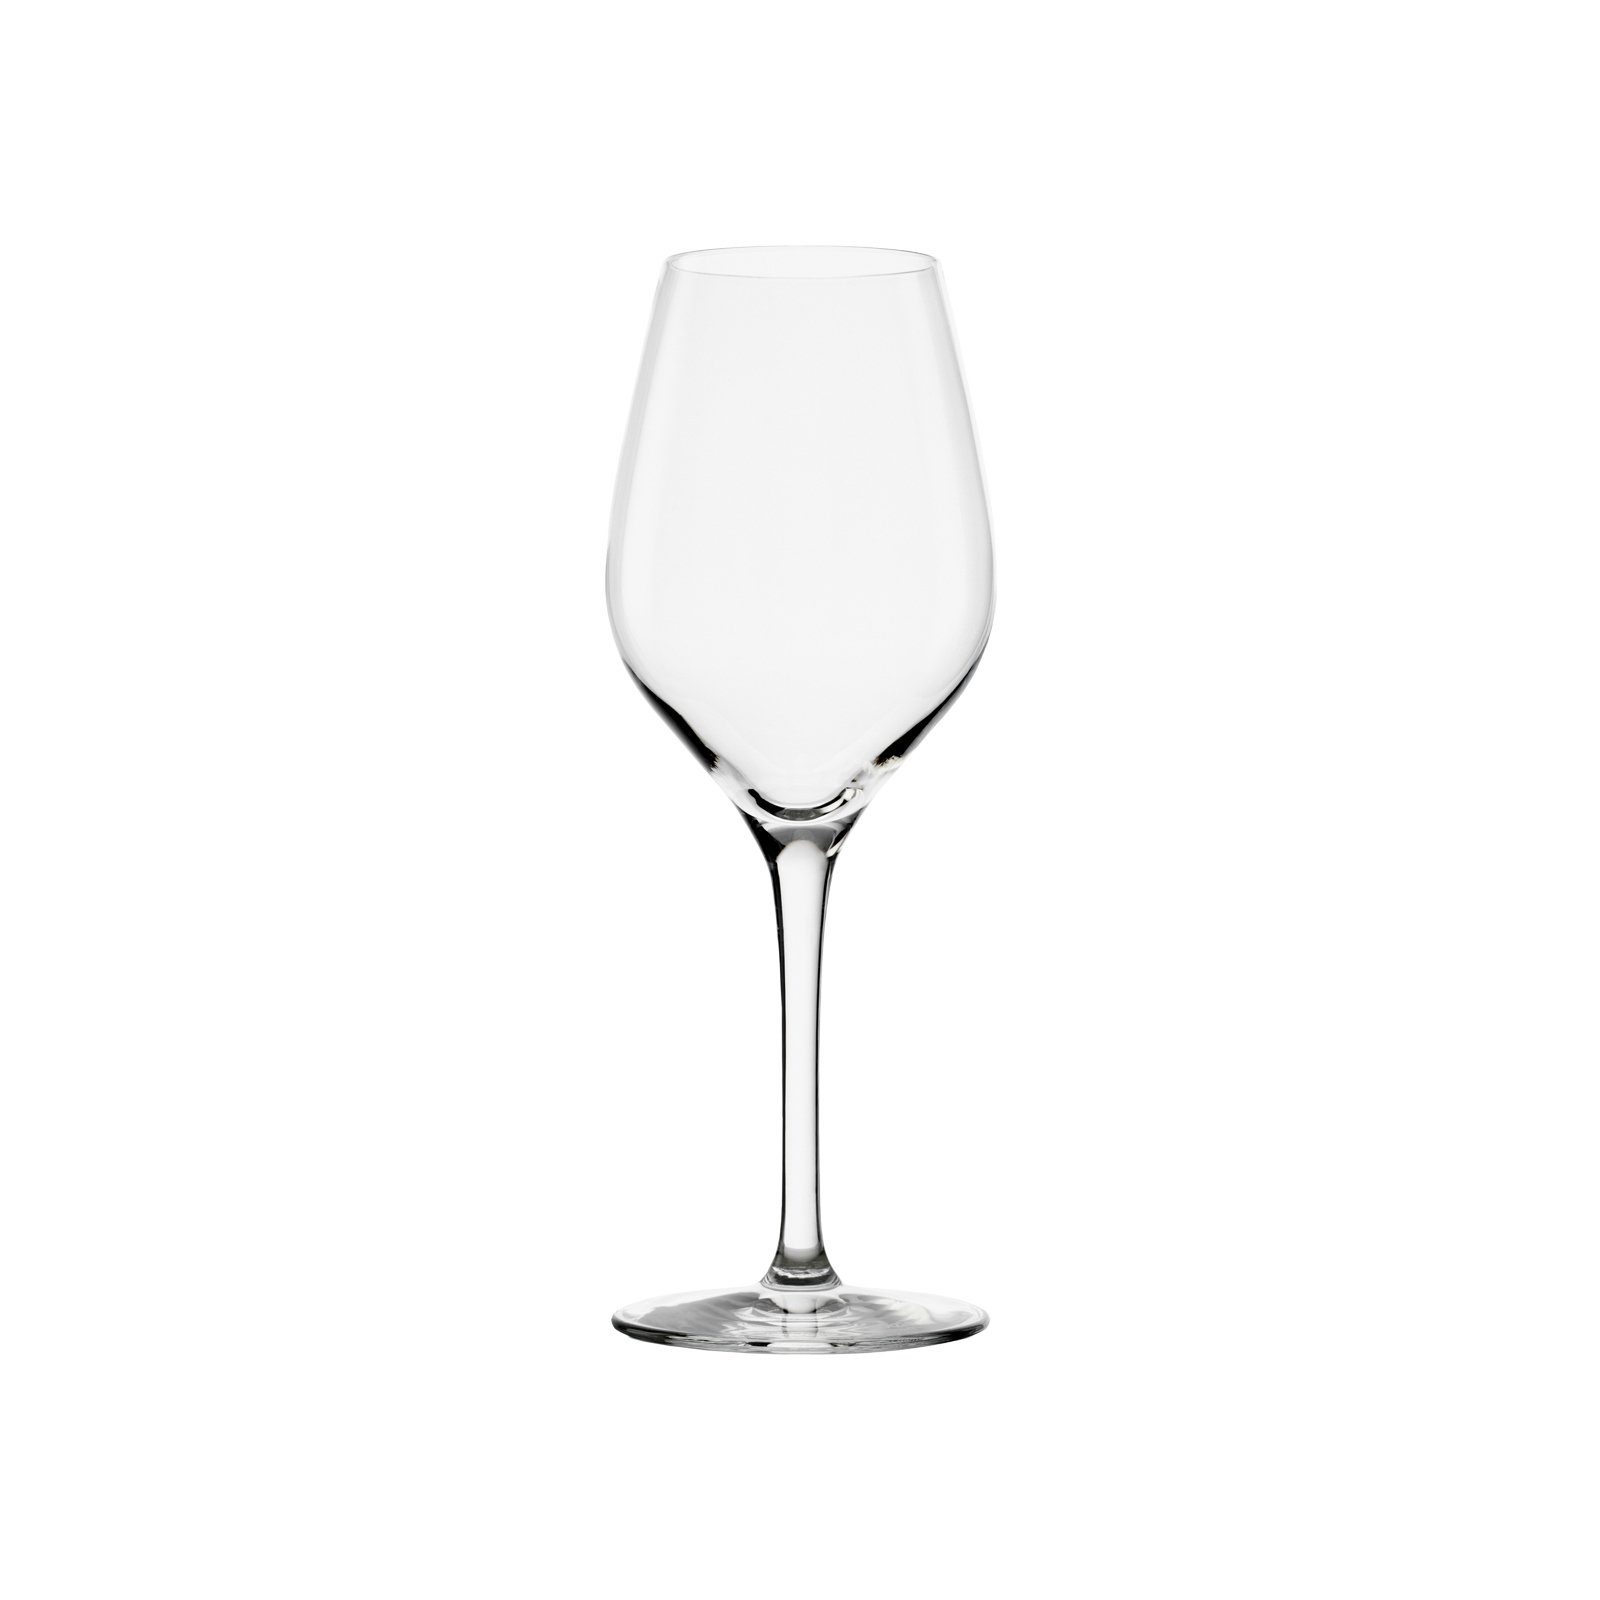 Glas 18er Stölzle Champagner Exquisit Tastinggläser Set, Glas